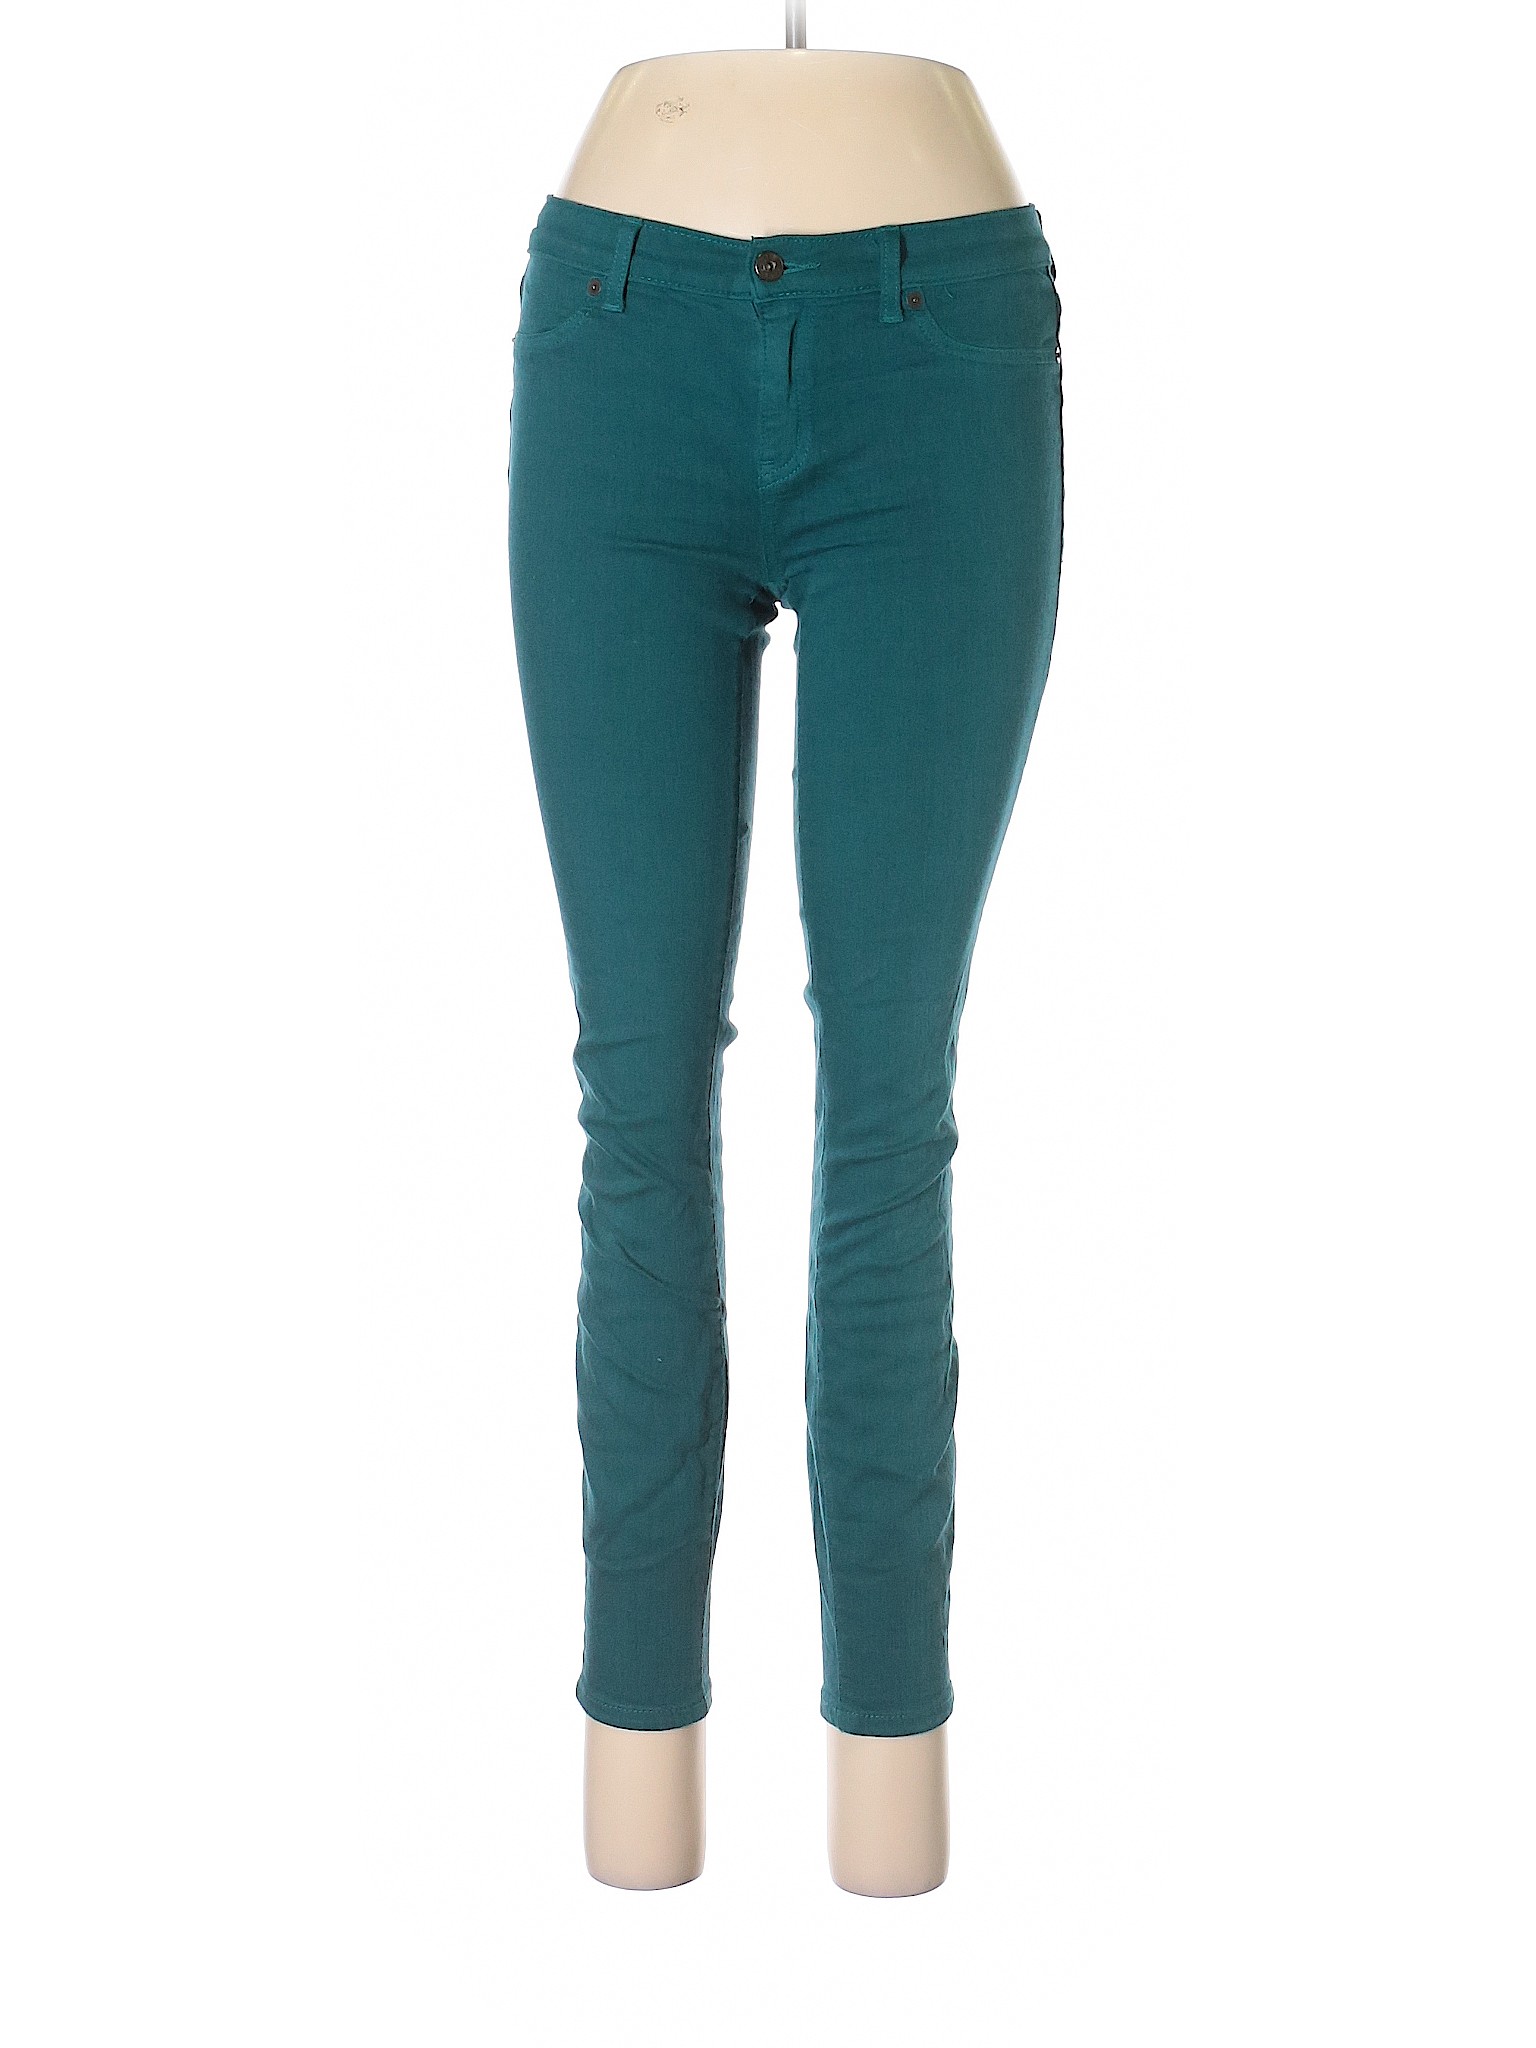 Lila Ryan Women Green Jeans 27W | eBay